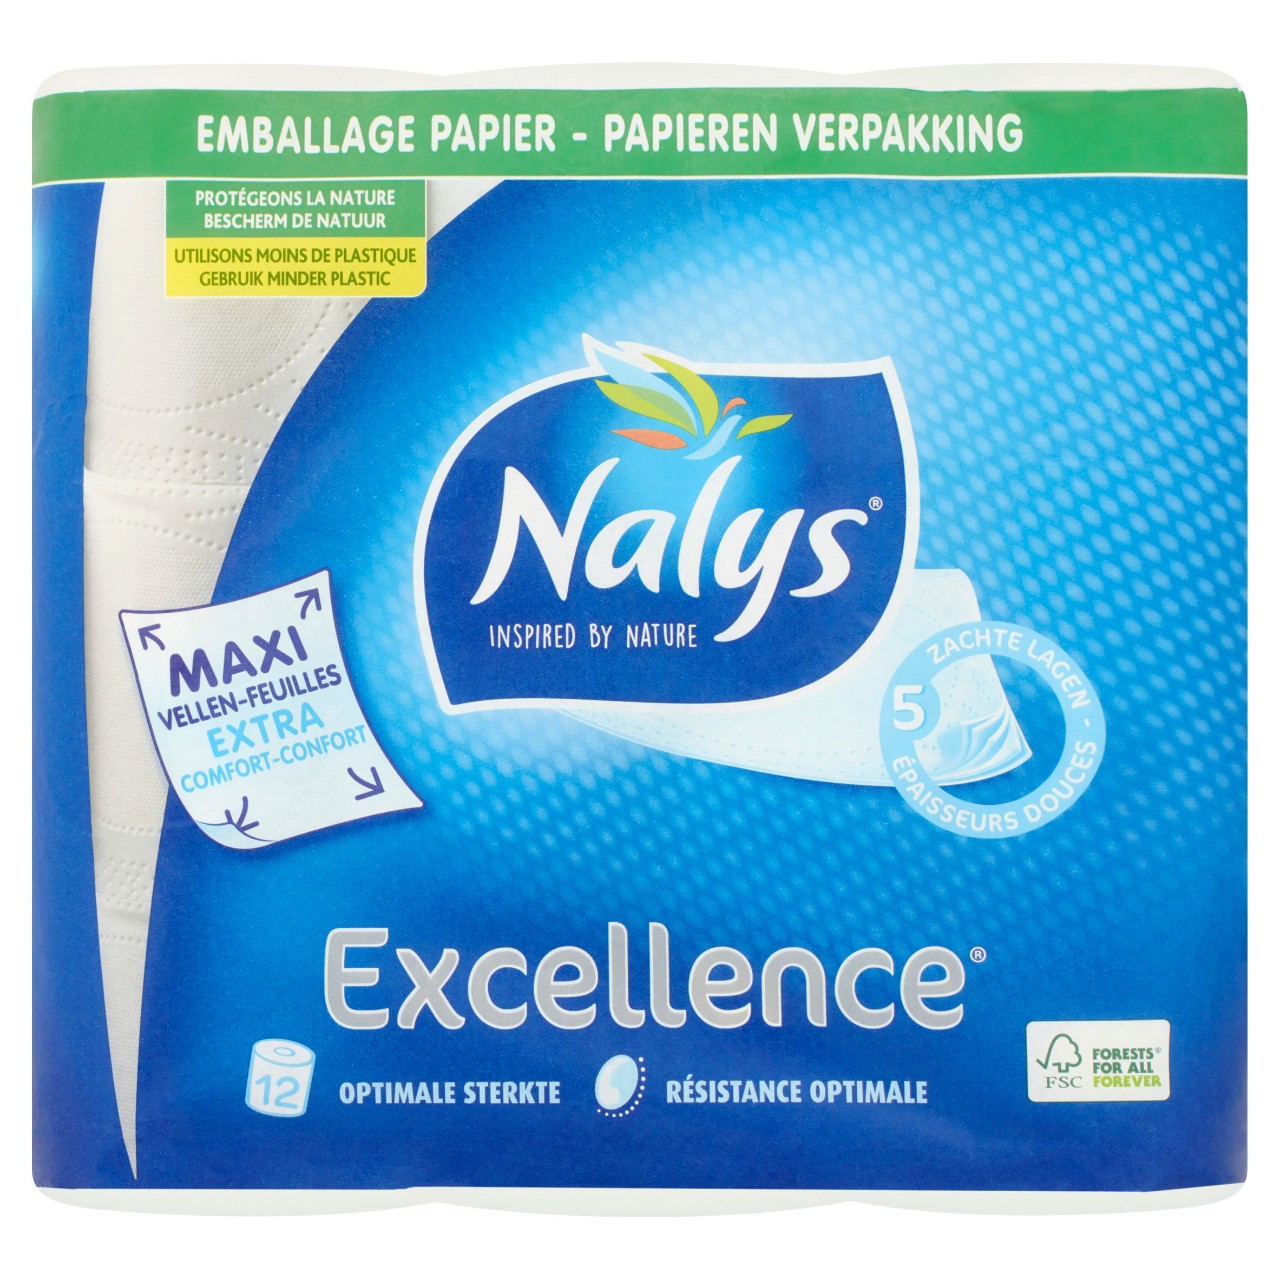 dodelijk betreuren Spoedig Nalys Toiletpapier excellence Zak 12 stuks | Sligro.nl